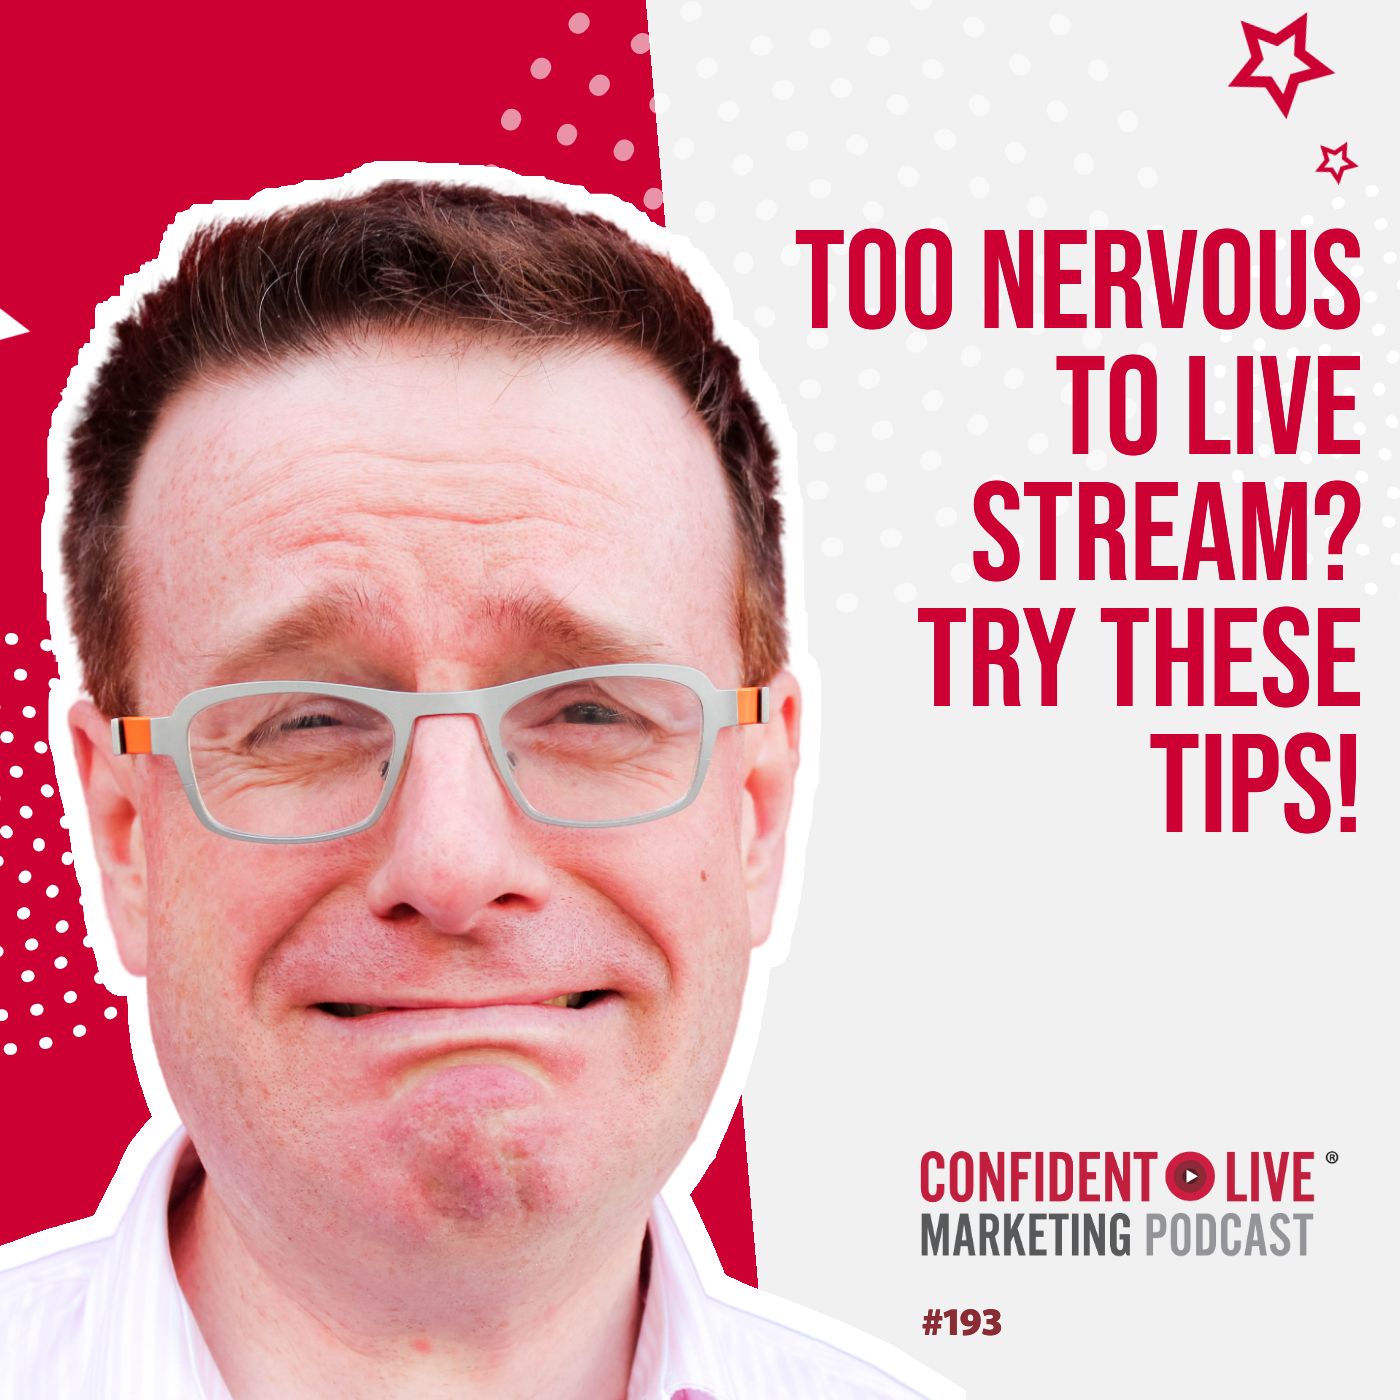 Artwork for podcast Confident Live Marketing Show